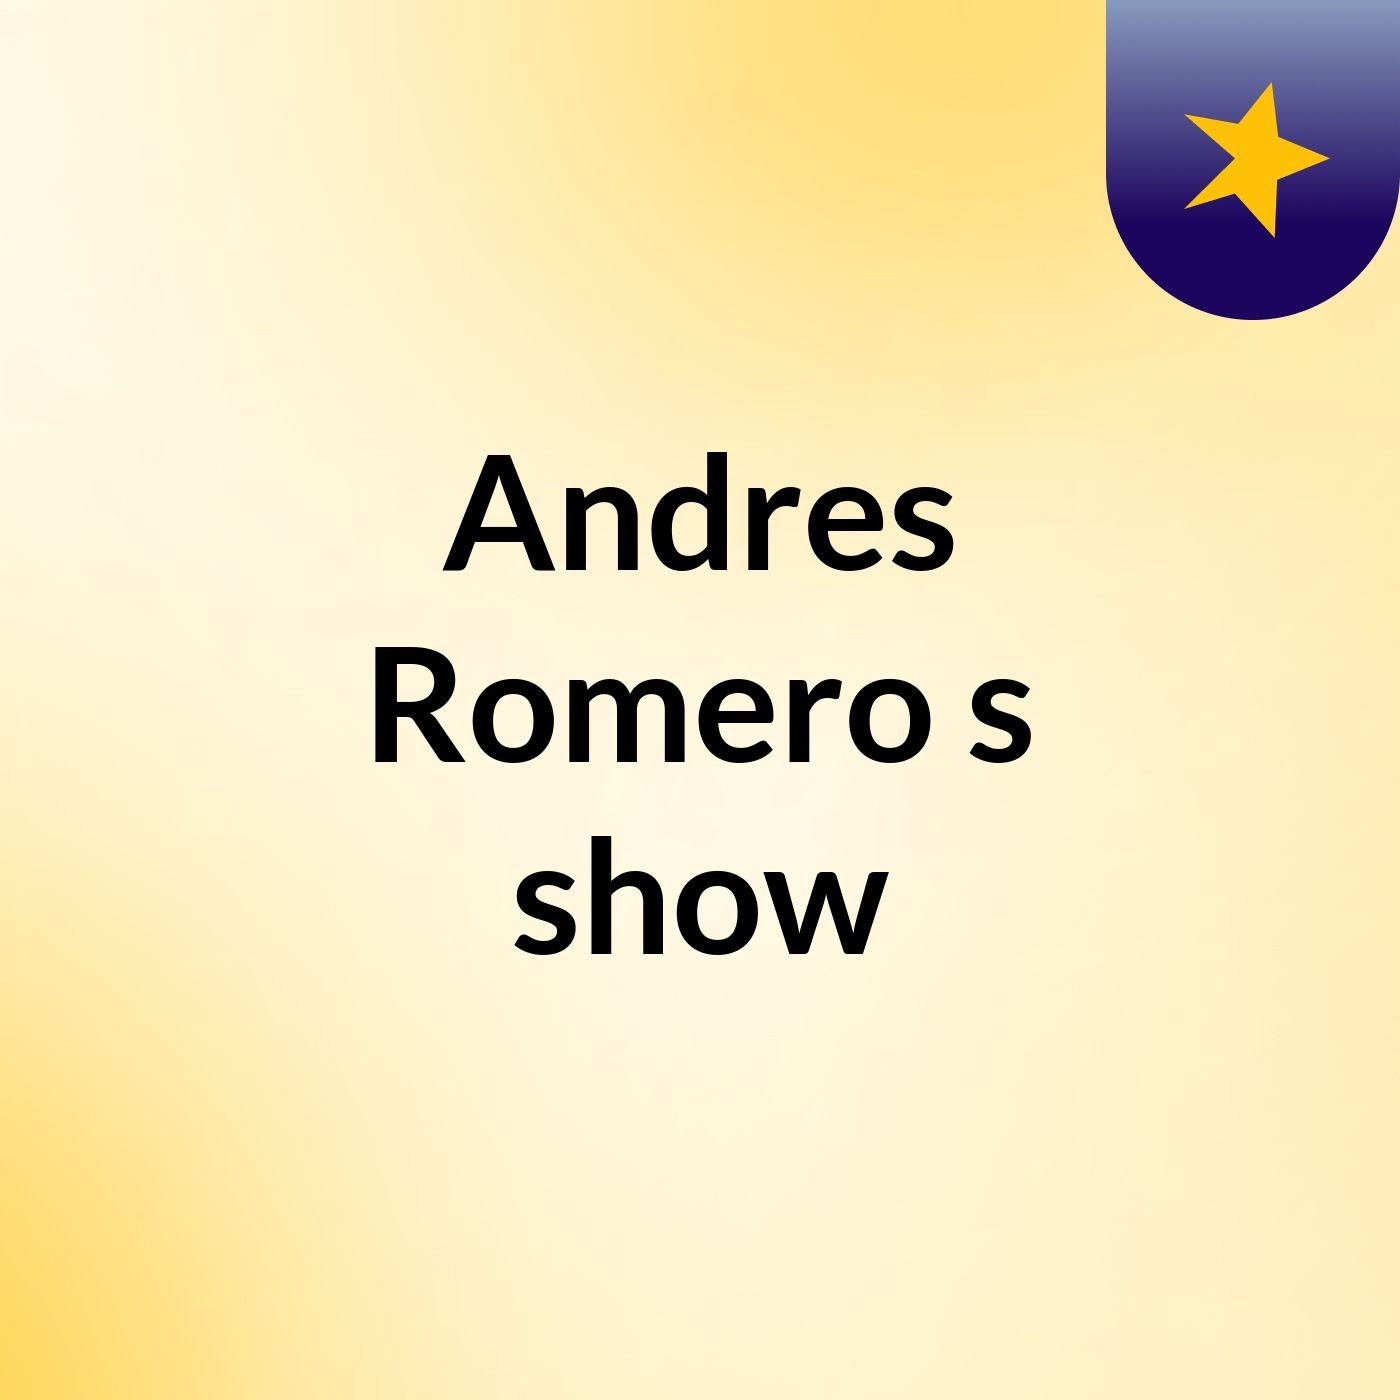 Andres Romero's show